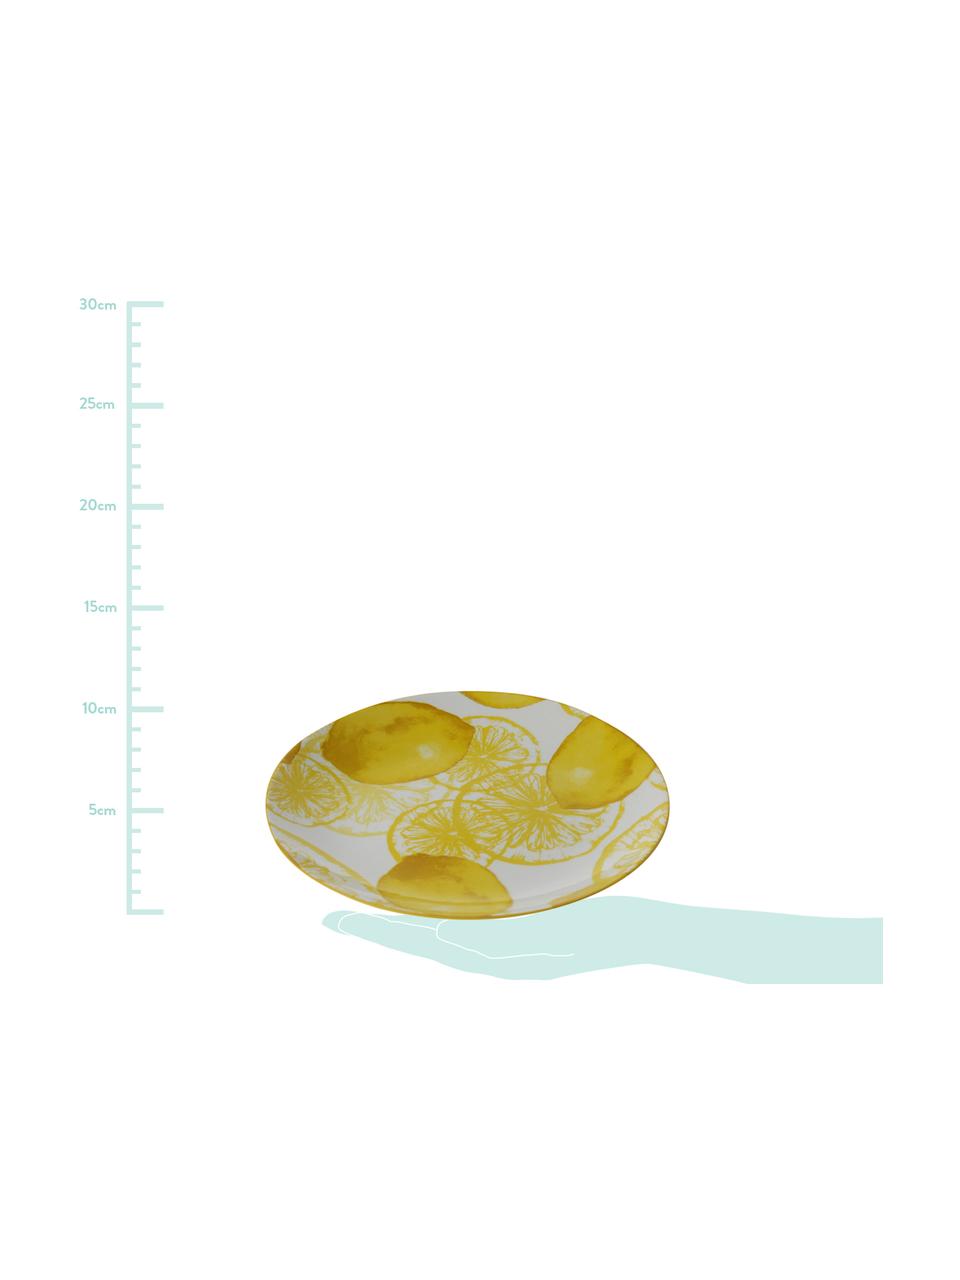 Talerz deserowy Lemon, 2 szt., Porcelana, Biały, żółty, Ø 20 cm